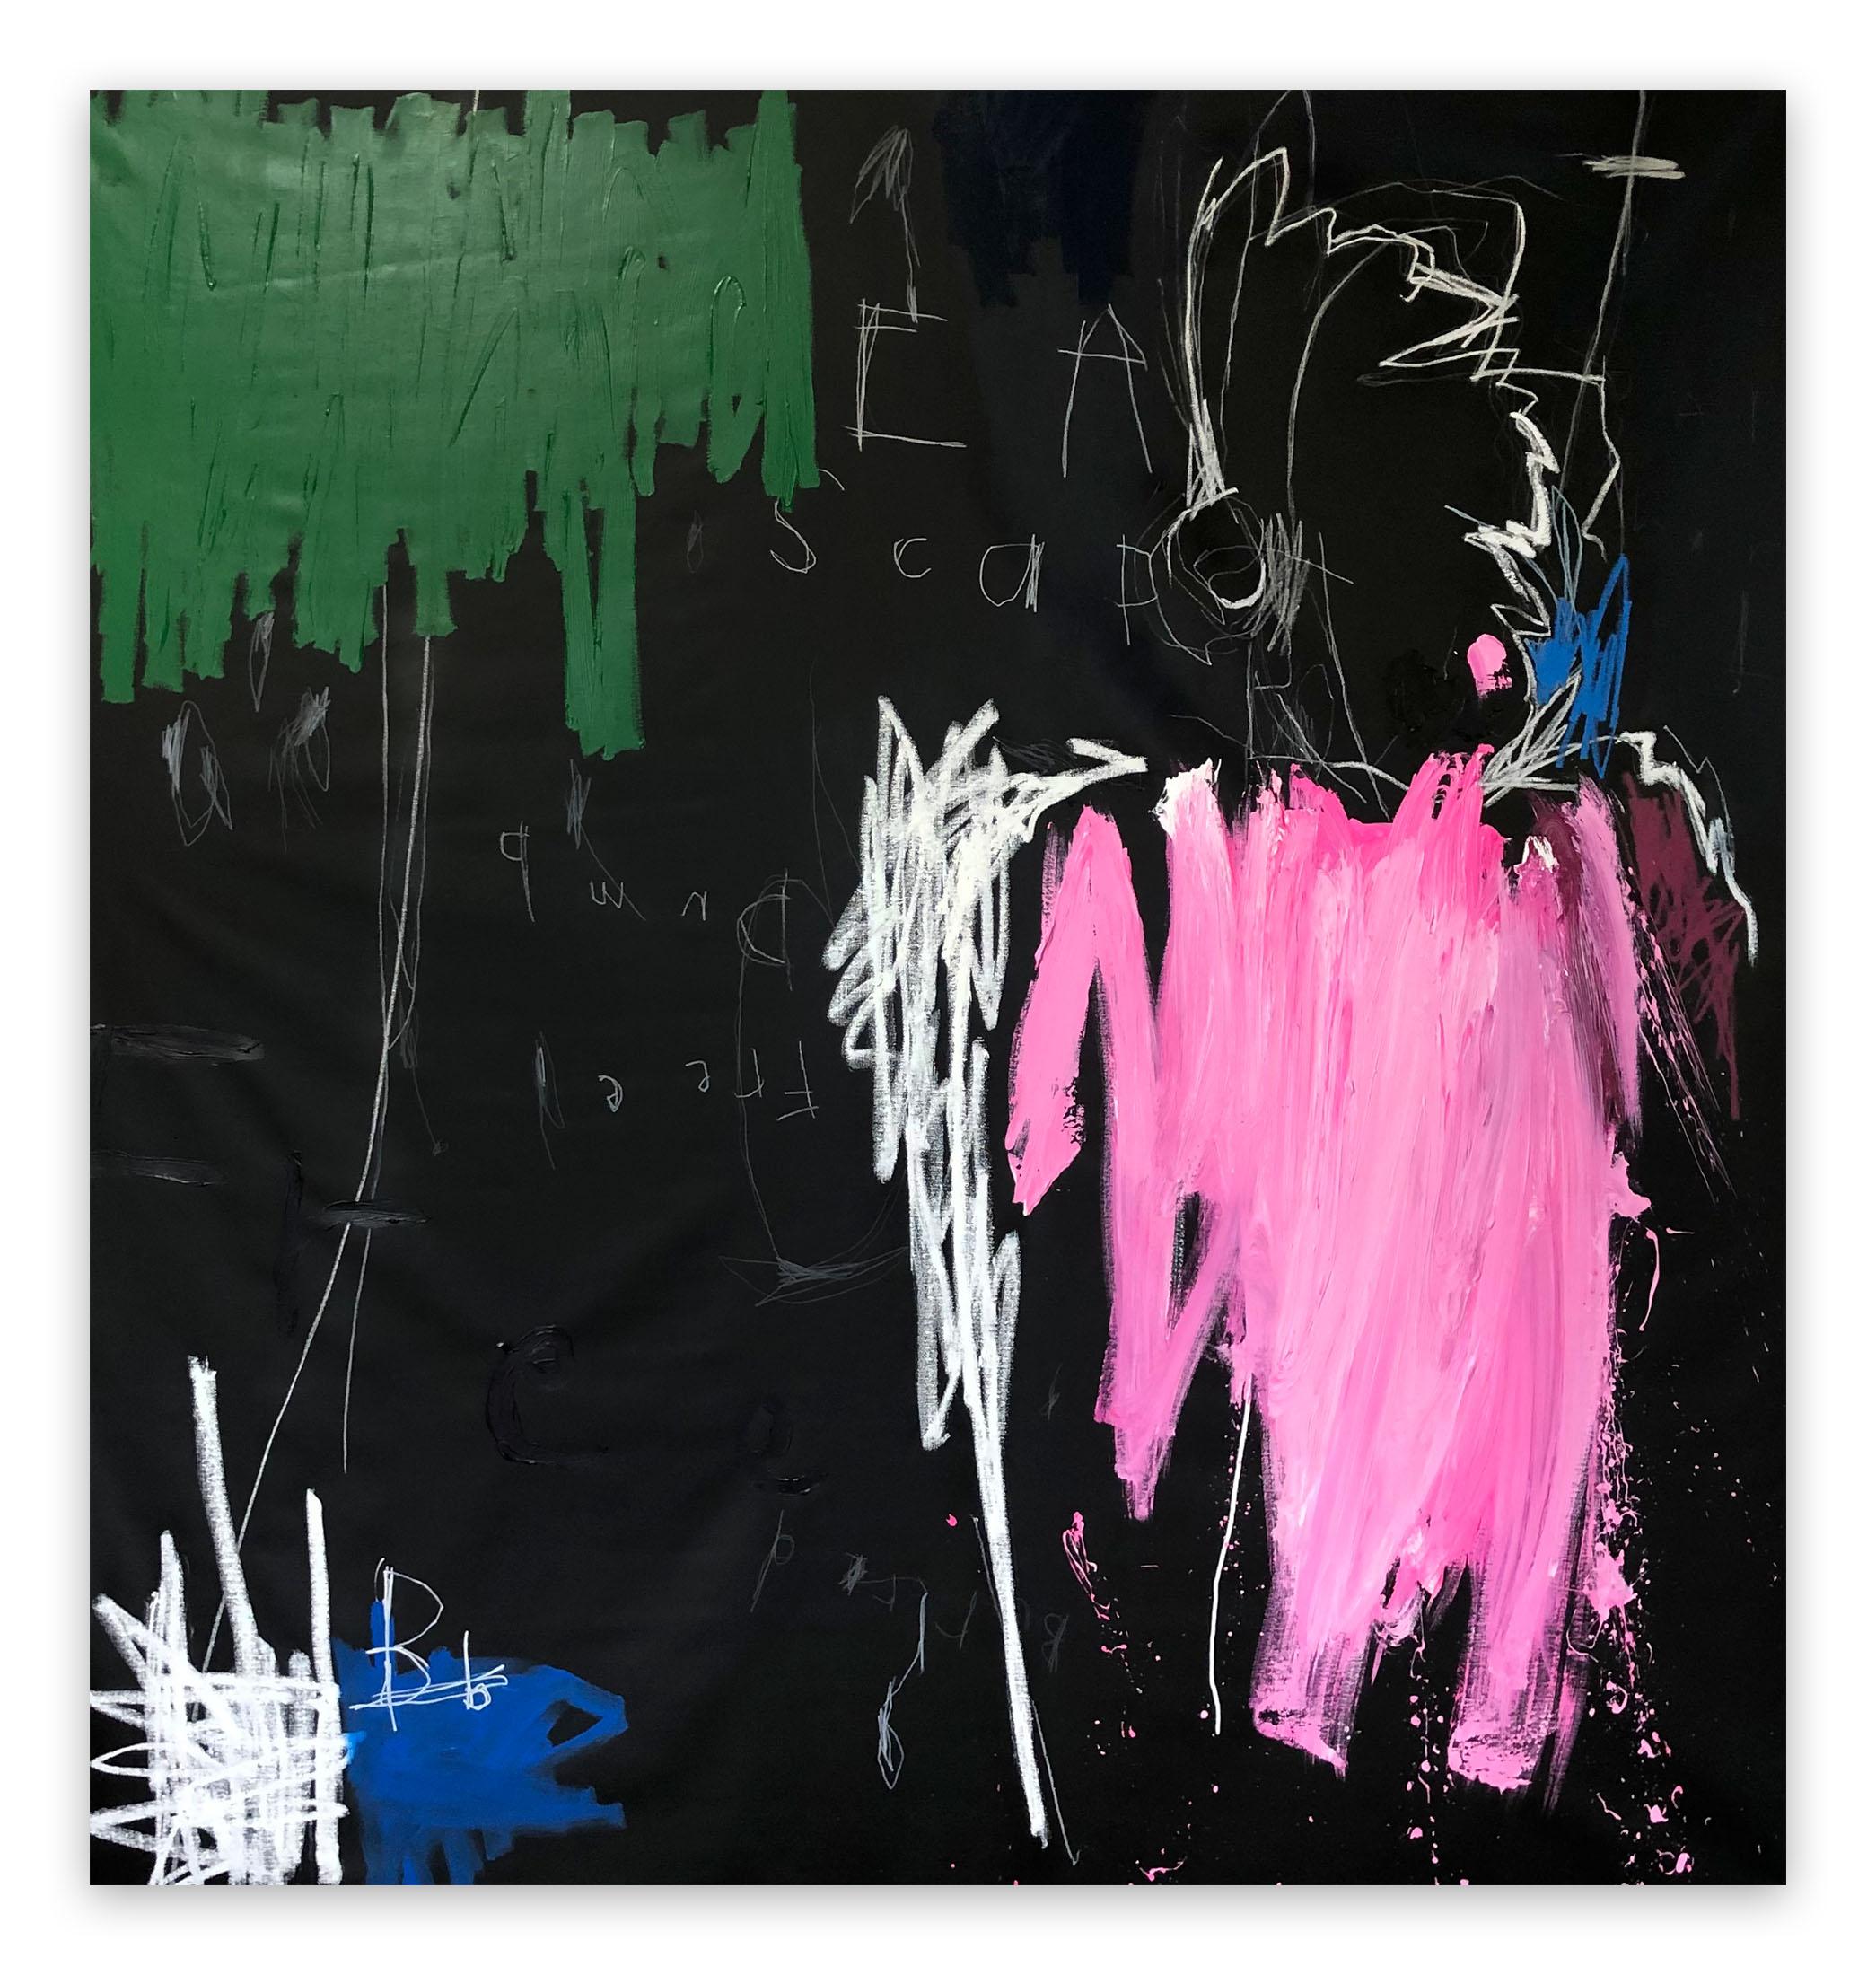 Nathan Paddison Abstract Painting - FreeDumb (Abstract painting)